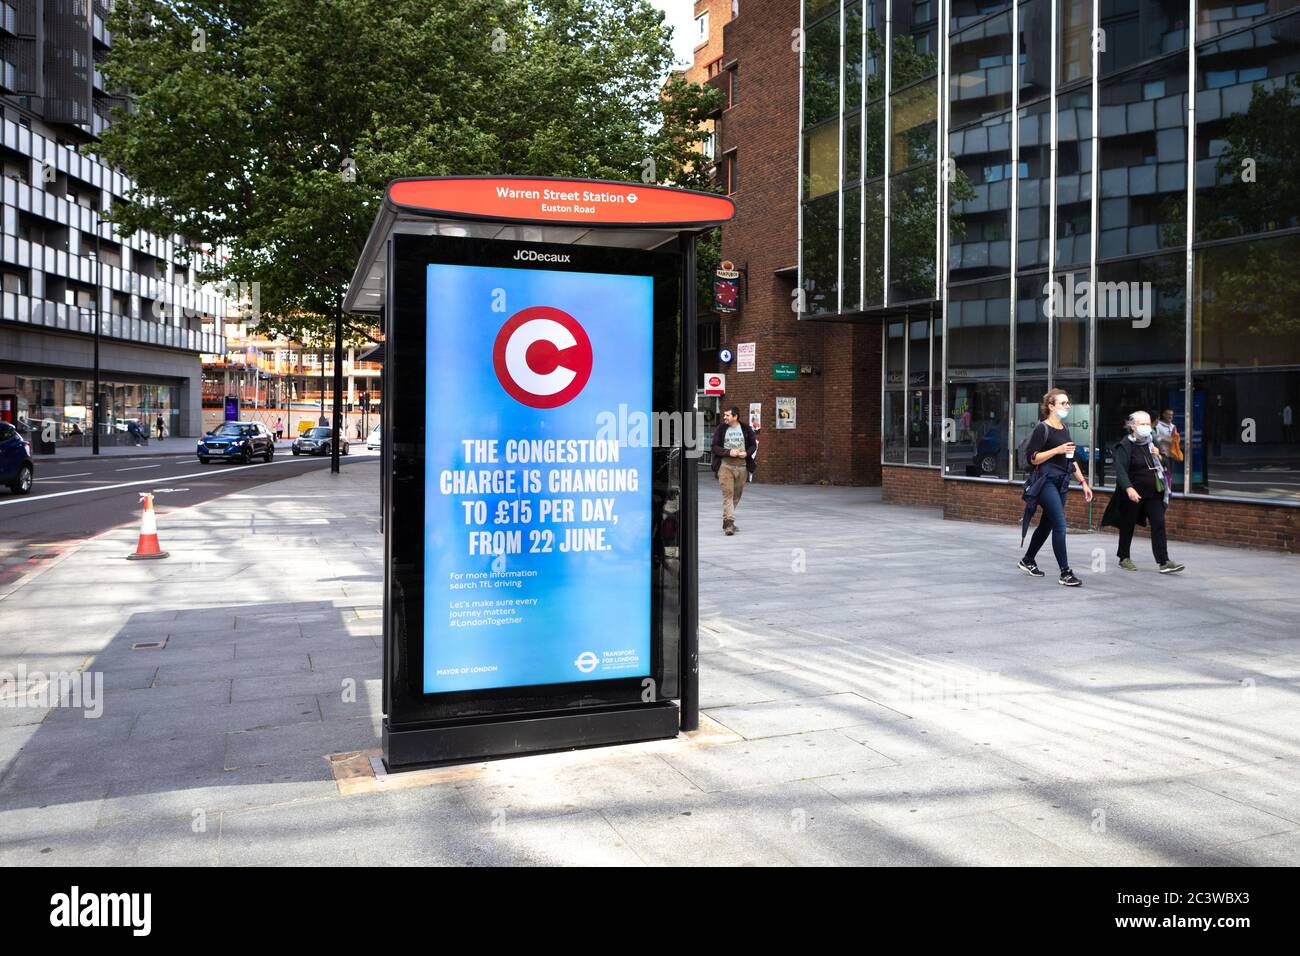 Une publicité numérique sur le changement de tarification des frais de congestion pendant l'épidémie de COVID-19. Londres, Royaume-Uni. Juin 2020 Banque D'Images